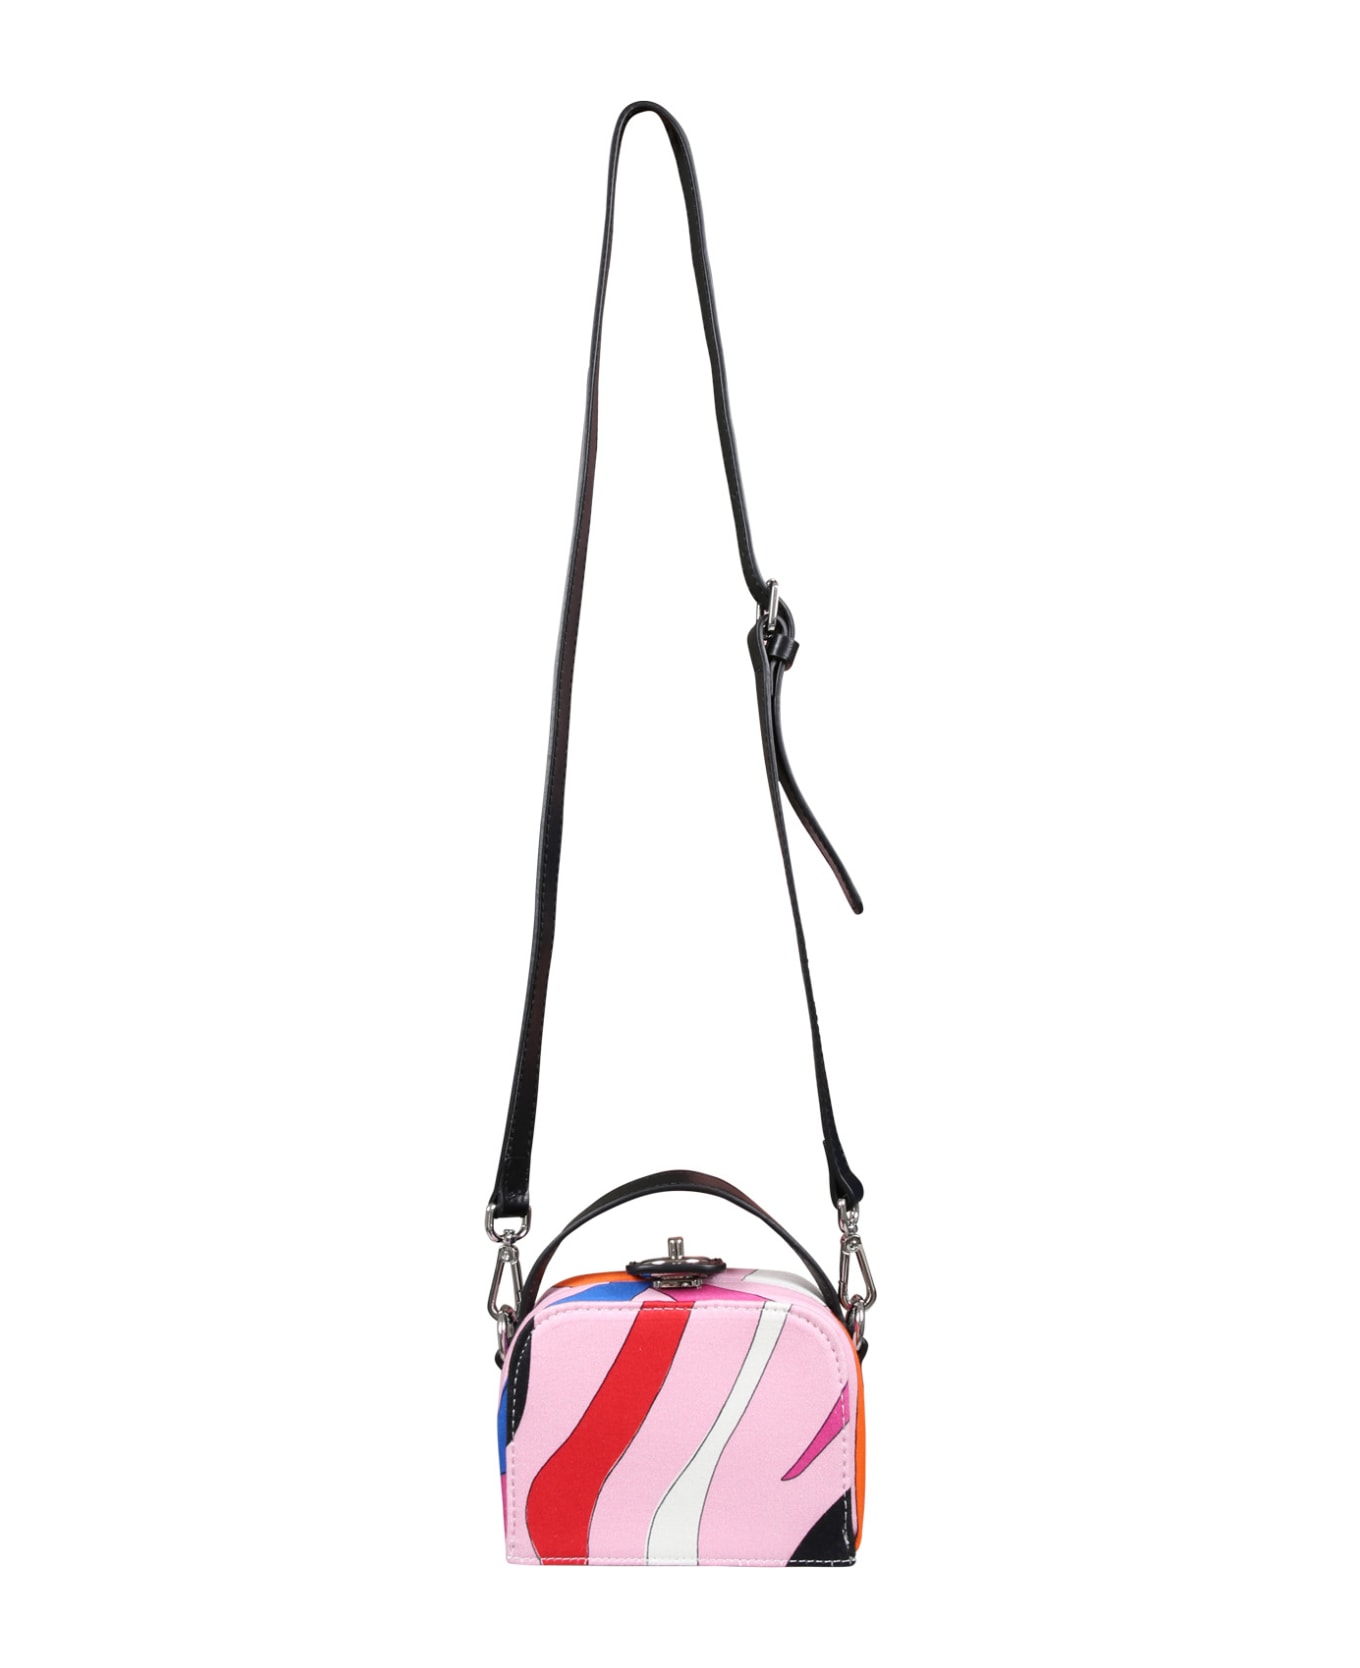 Pucci Multicolor Bag For Girl - Multicolor